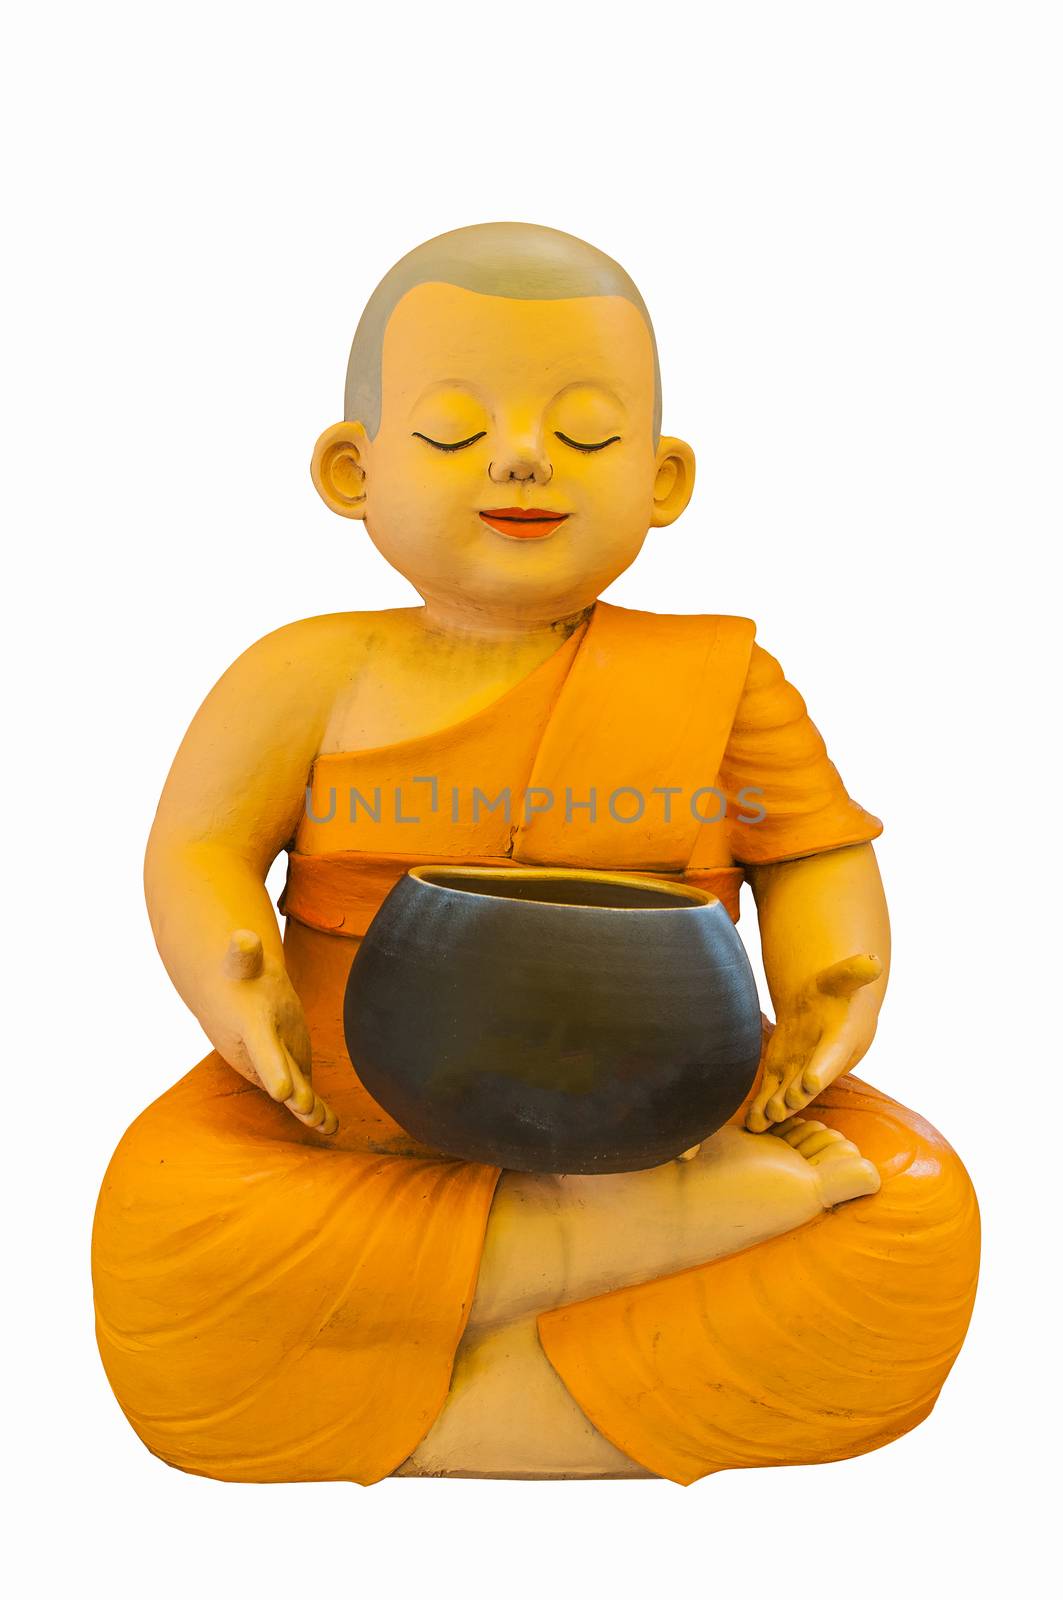 Earthenware of child monk by Sorapop